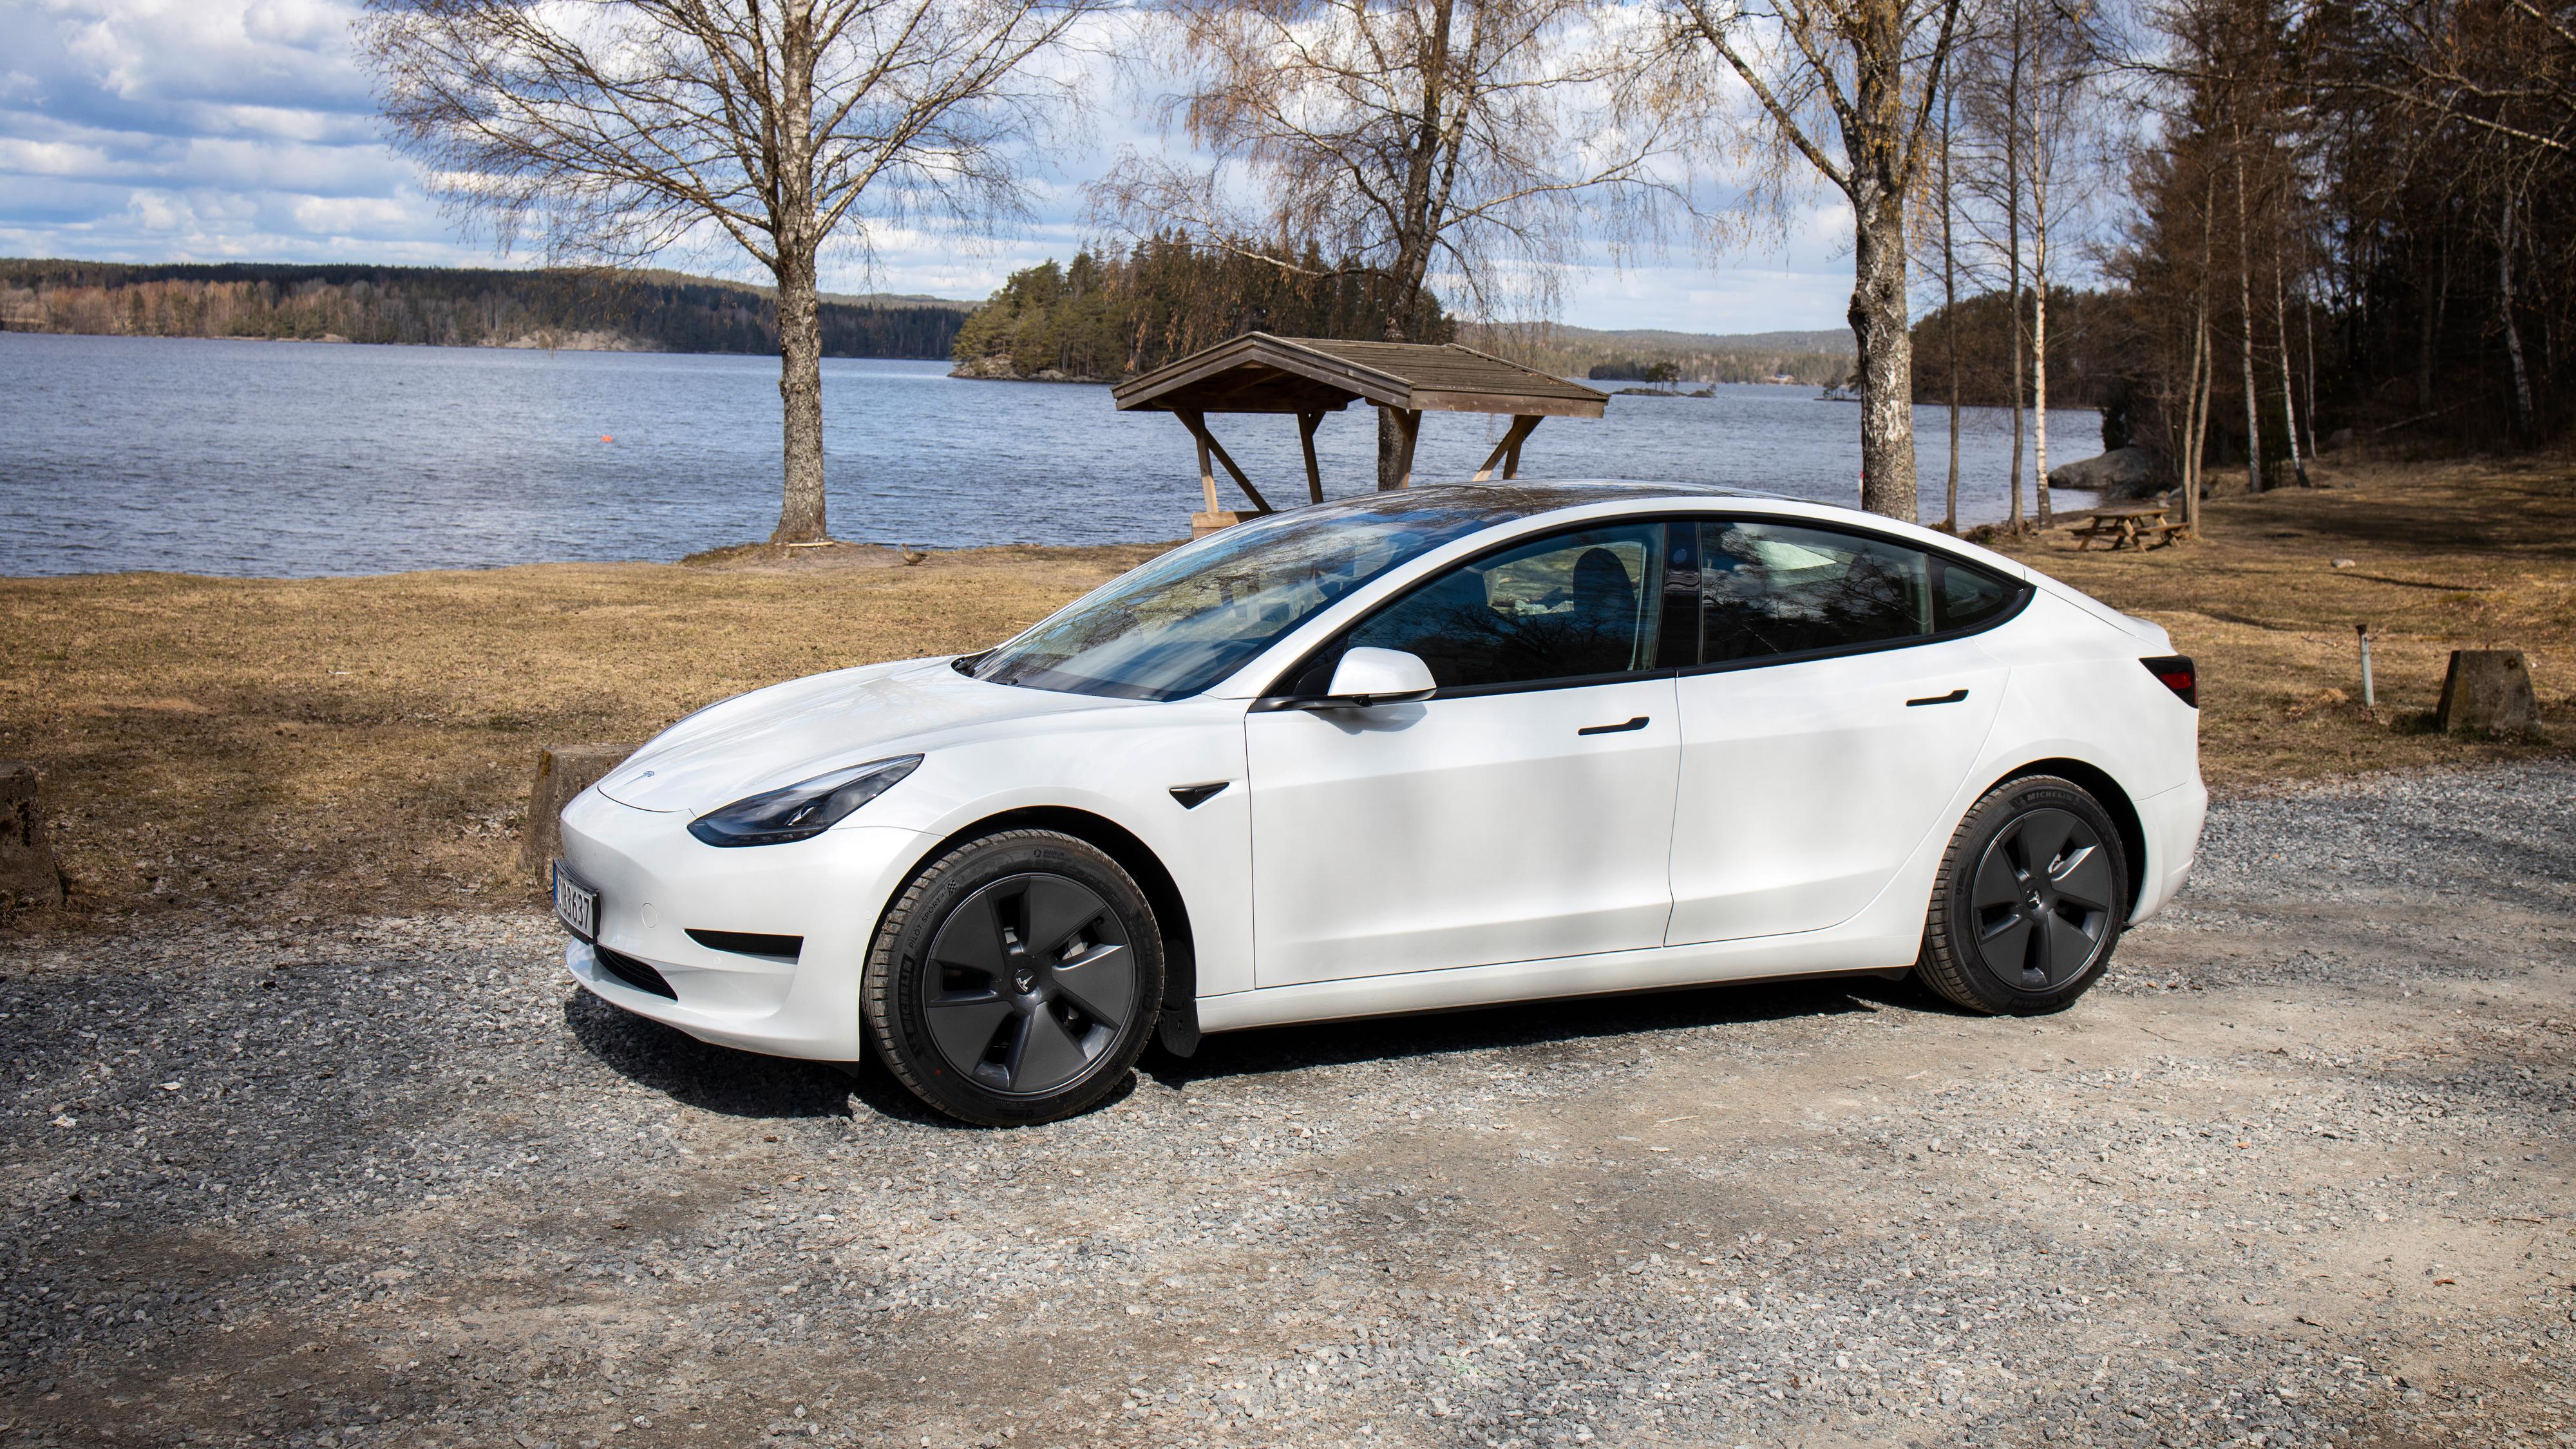 Tesla setter opp prisen på Model 3, Model S og Model X